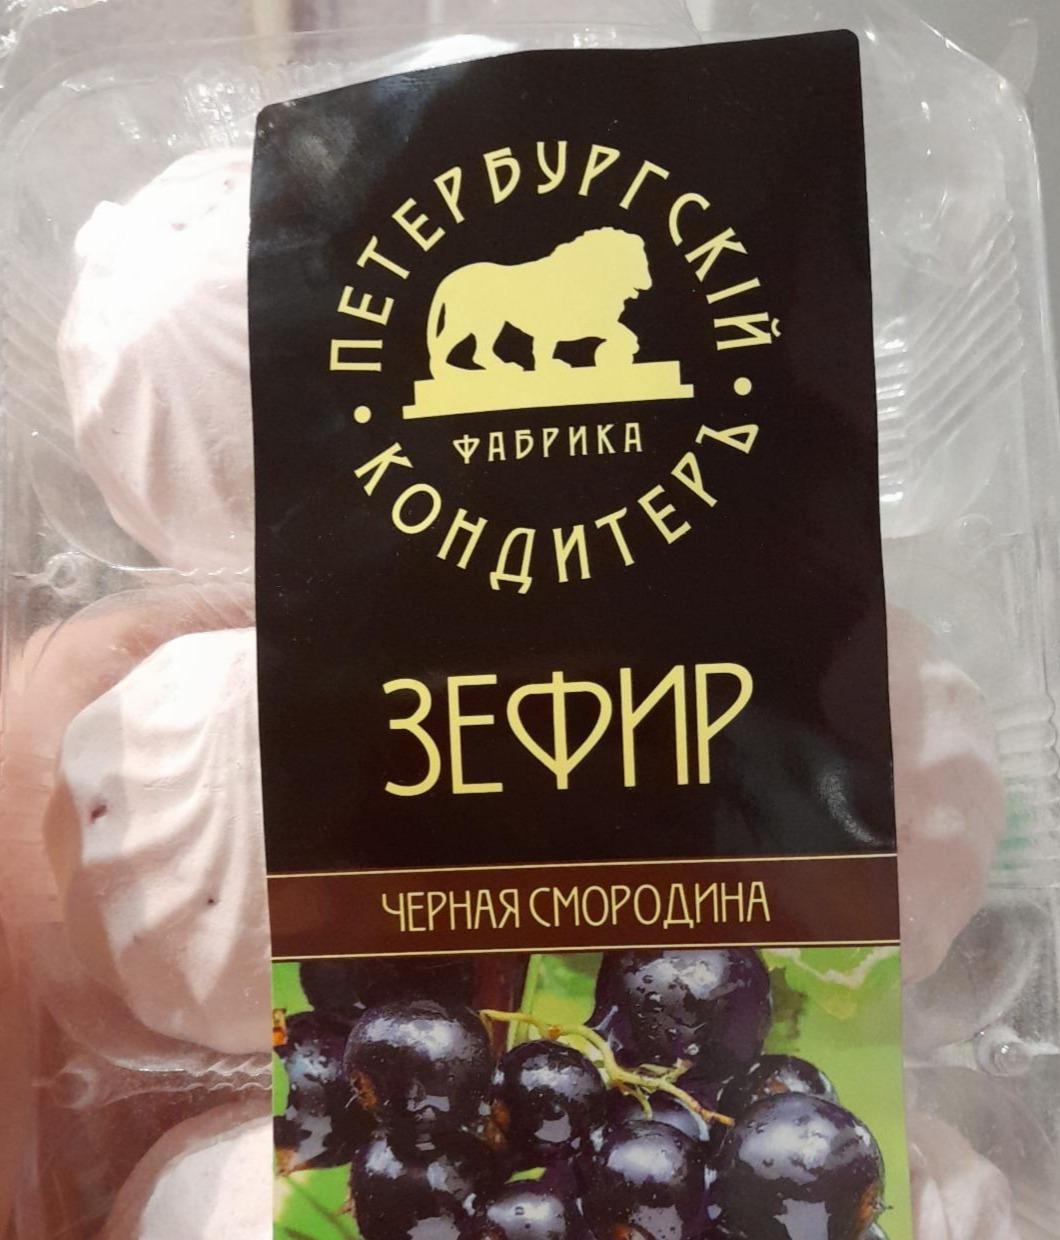 Фото - Зефир с натуральными ягодами Петербургский КондитерЪ